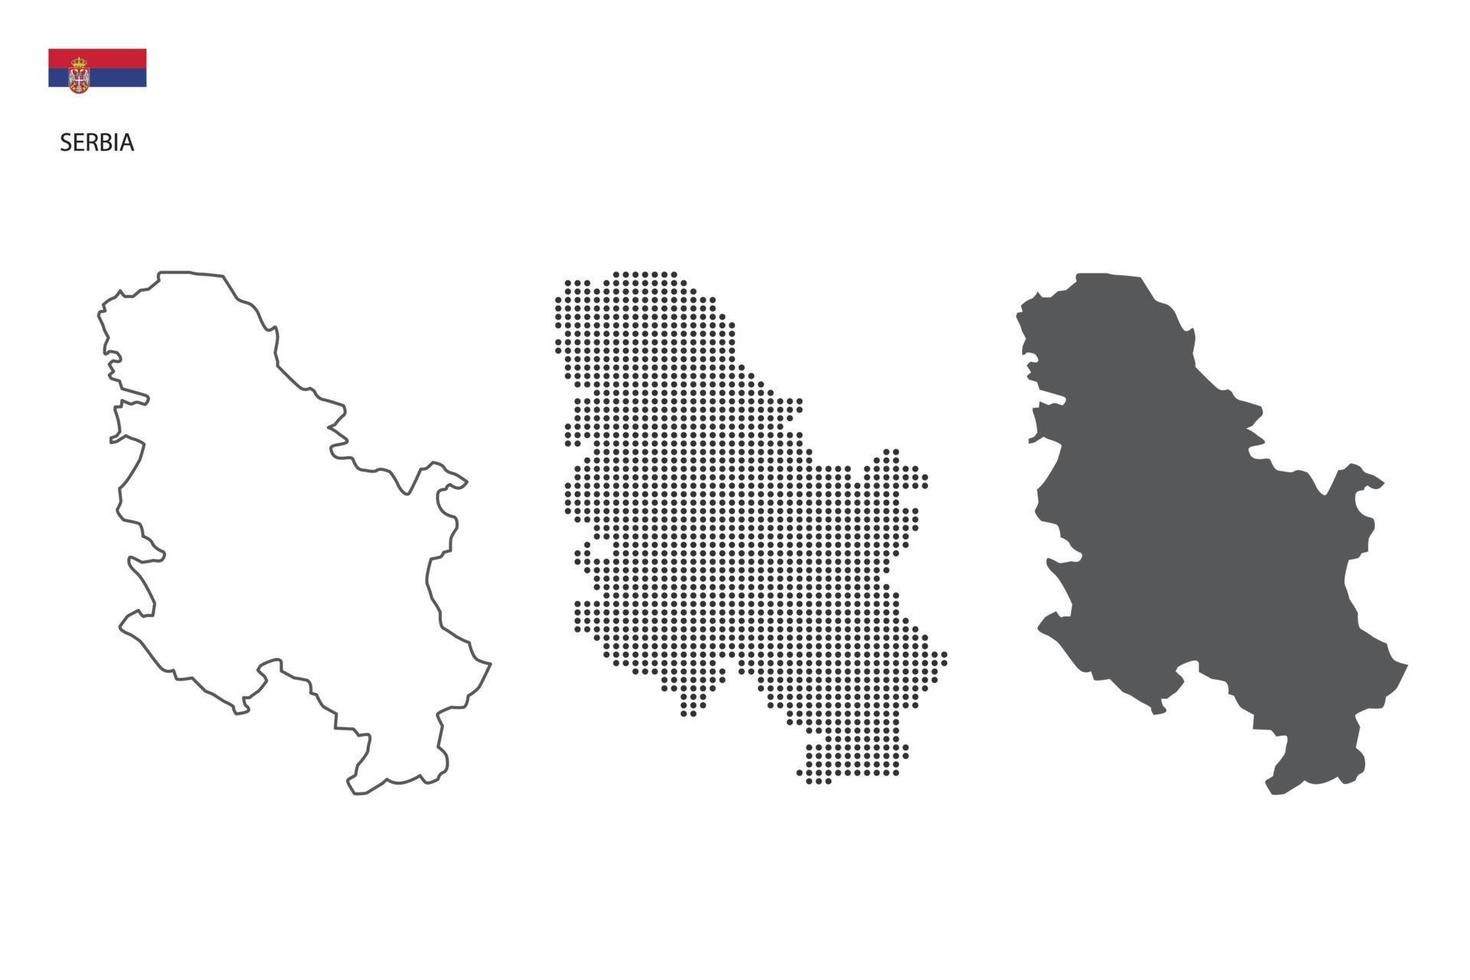 3 versões do vetor da cidade do mapa da Sérvia por estilo de simplicidade de contorno preto fino, estilo de ponto preto e estilo de sombra escura. tudo no fundo branco.